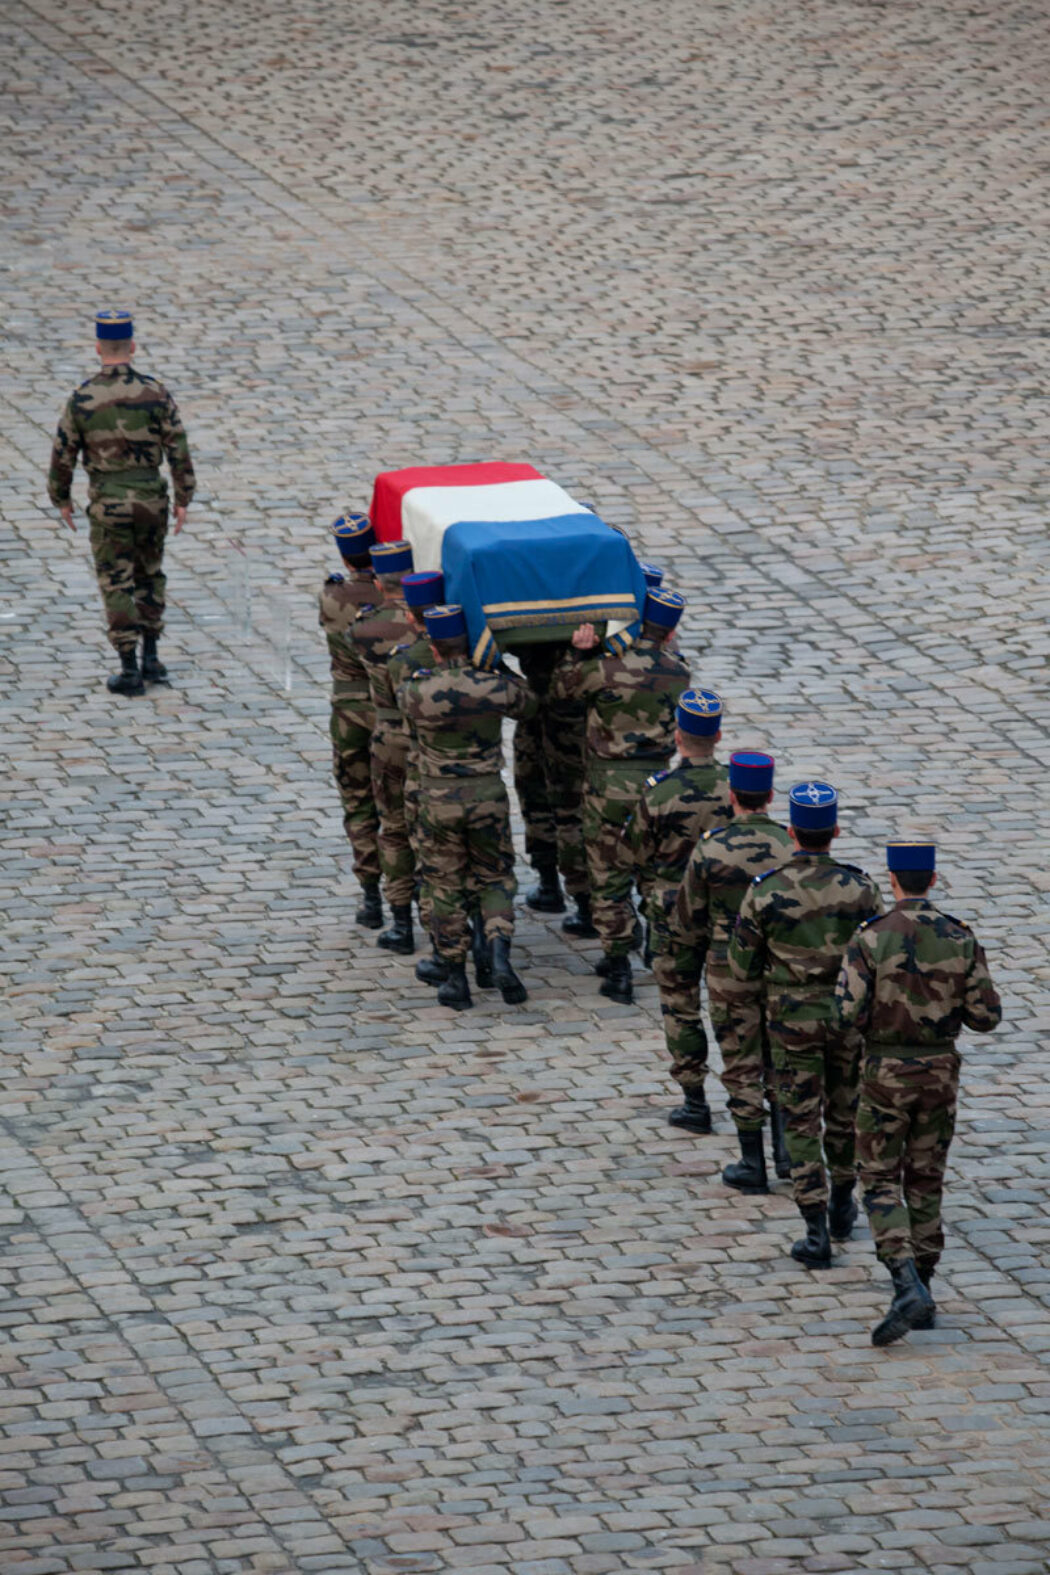 Mort de deux militaires français au Burkina Faso. RIP